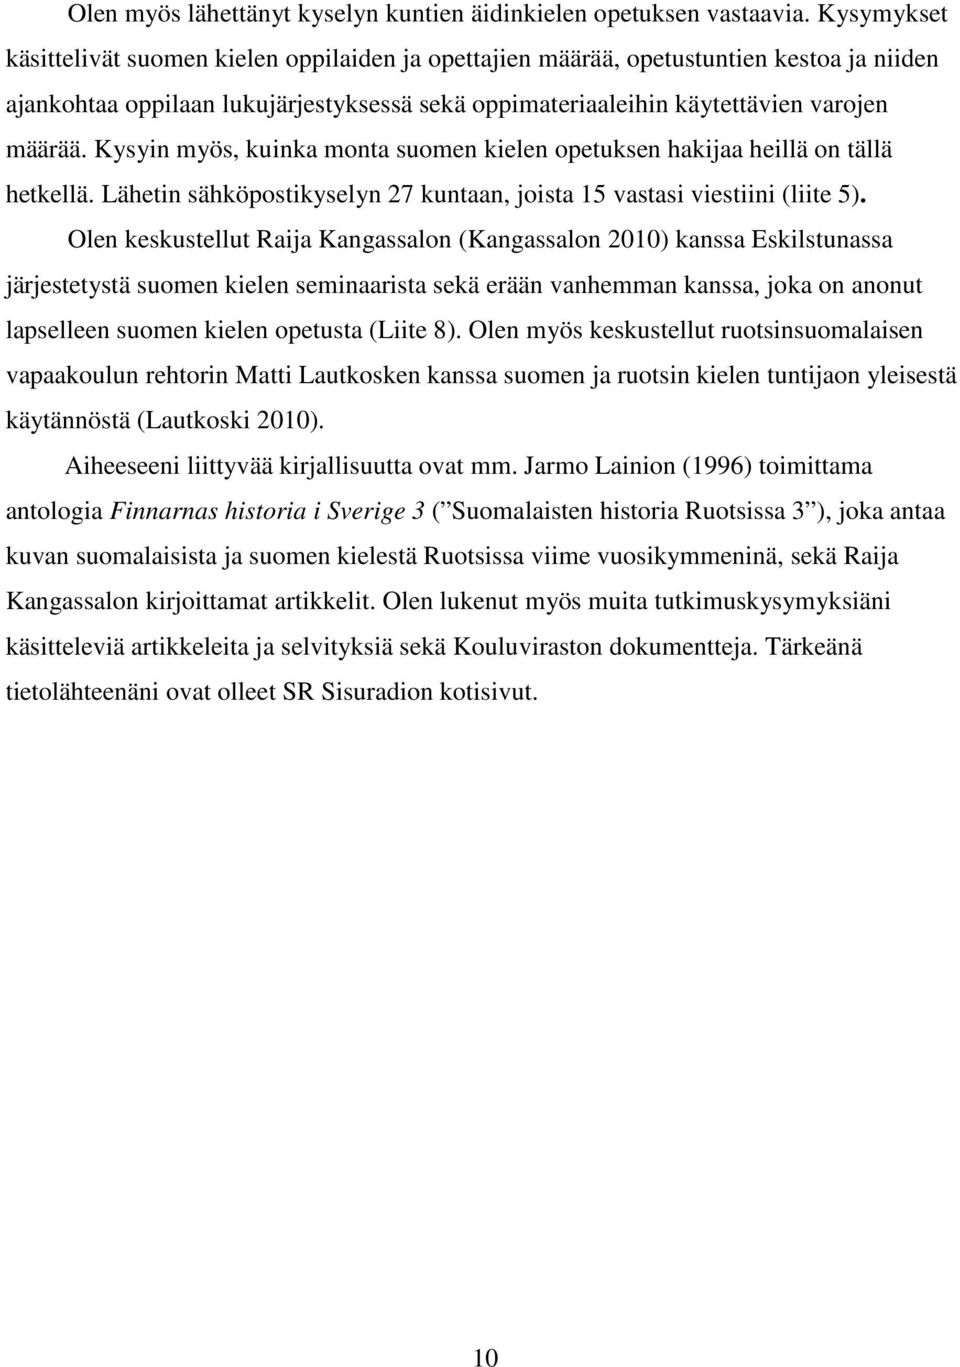 Kysyin myös, kuinka monta suomen kielen opetuksen hakijaa heillä on tällä hetkellä. Lähetin sähköpostikyselyn 27 kuntaan, joista 15 vastasi viestiini (liite 5).